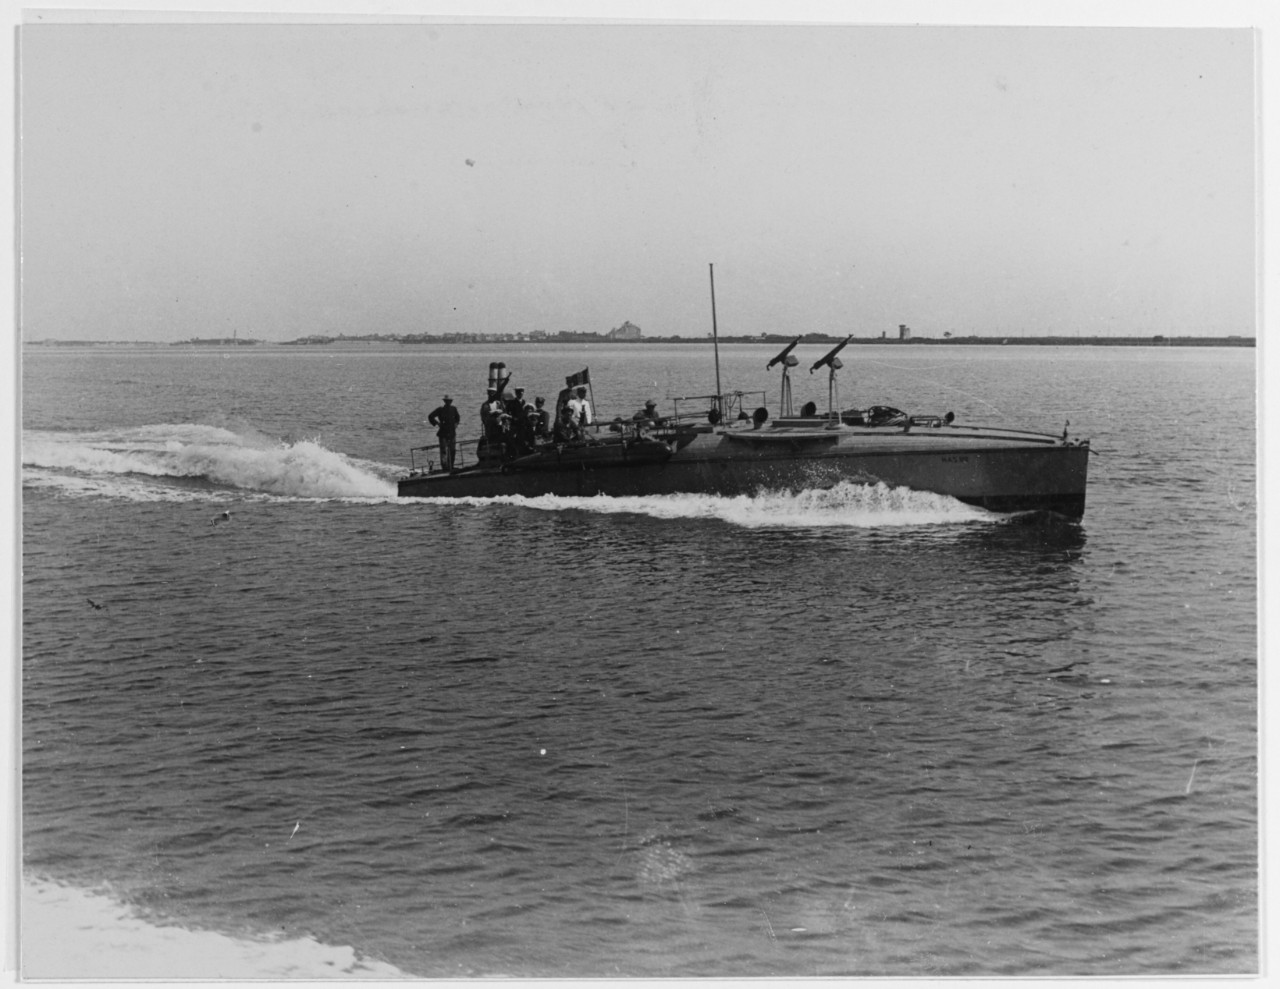 MAS 99 (Italian Motor Torpedo Boat)